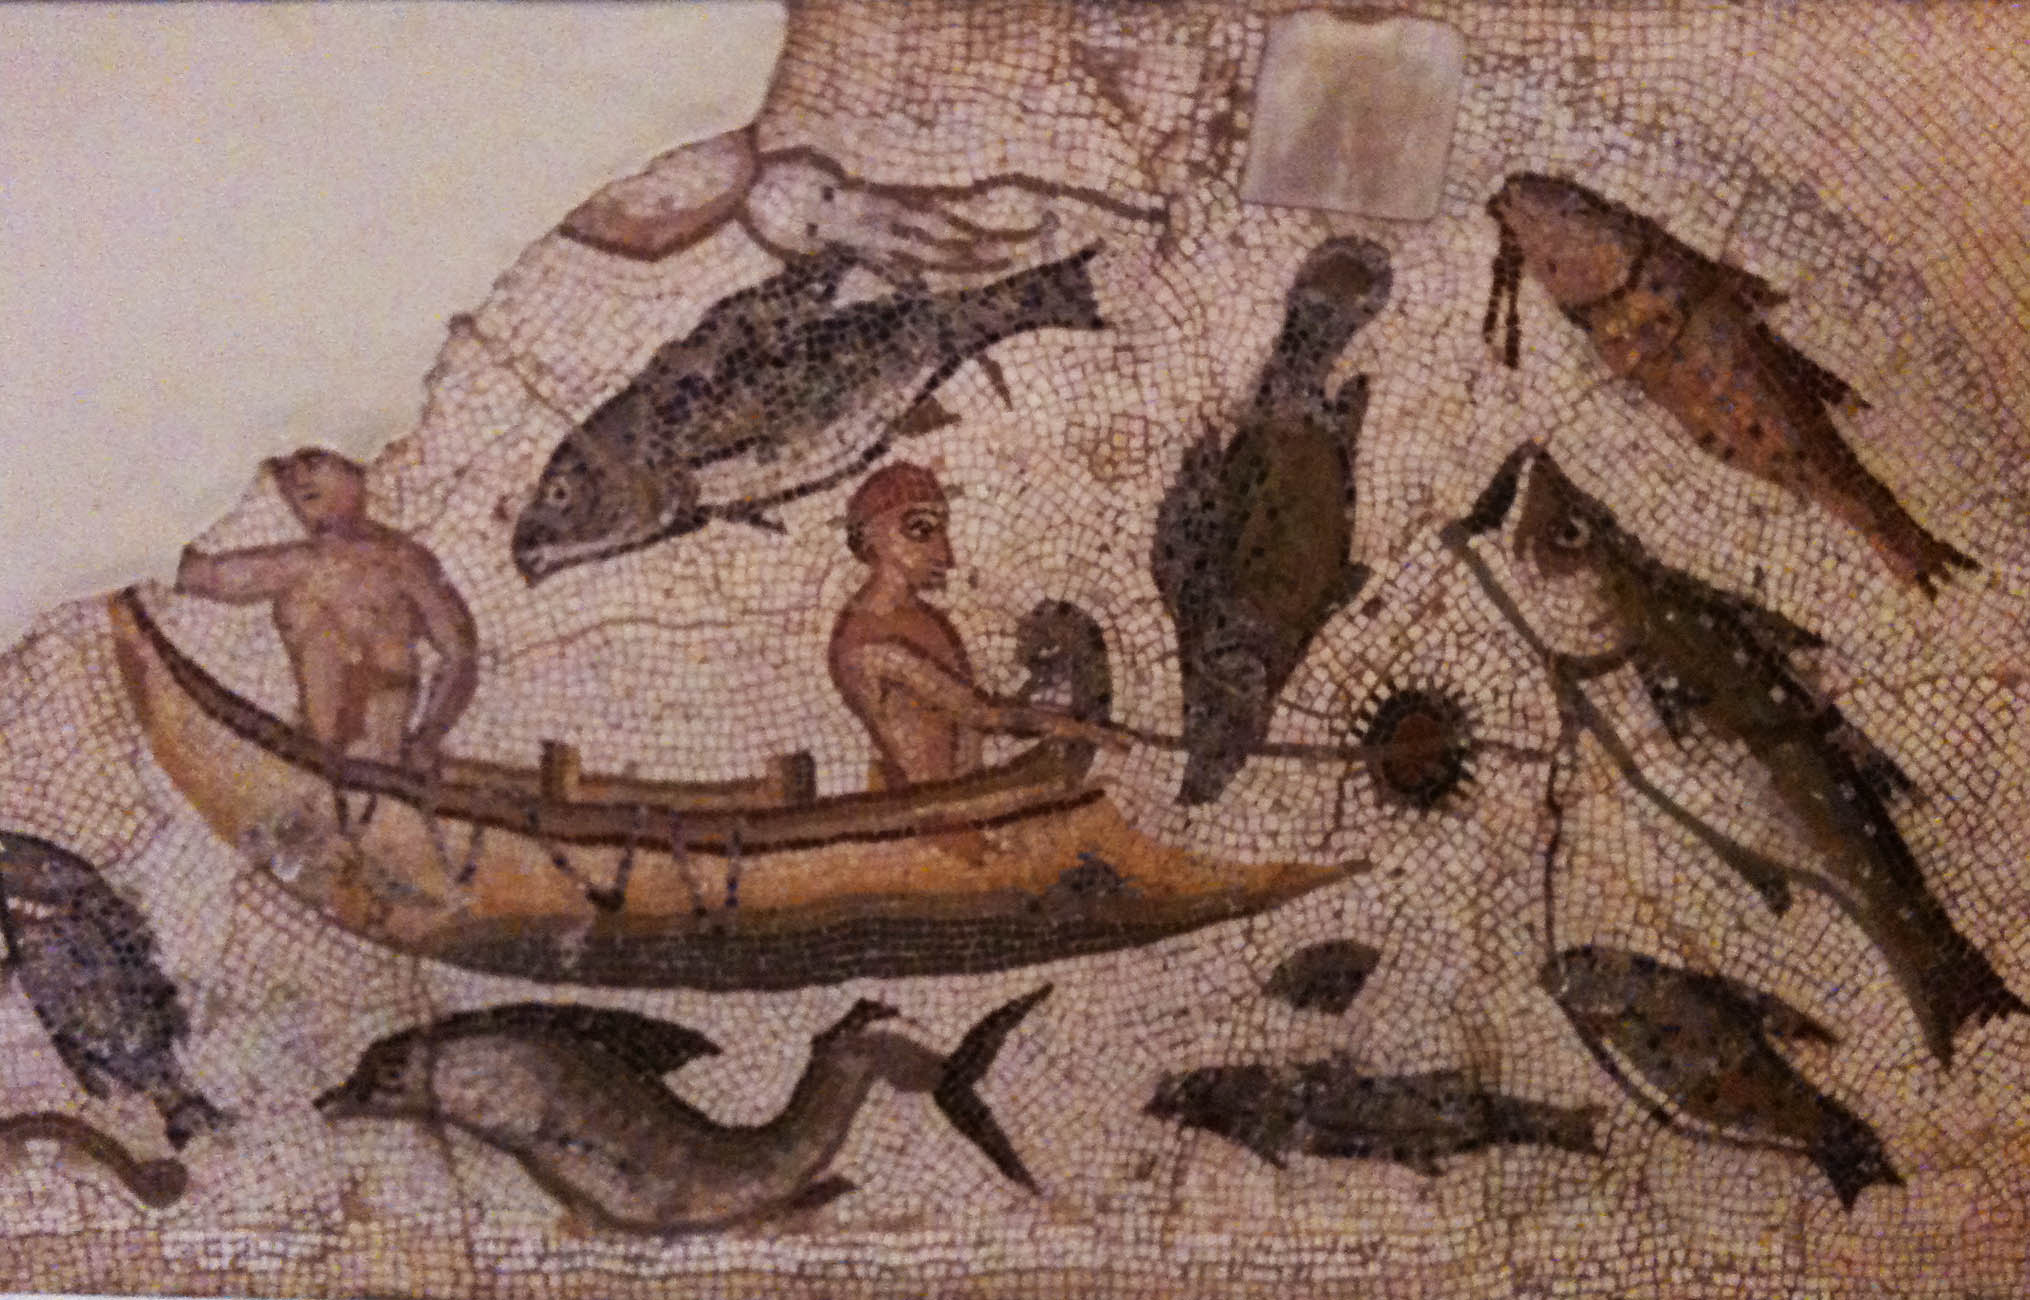 Рыба Барабулька римская мозаика Британский музей пейзажи природы Альберт Сафиуллин